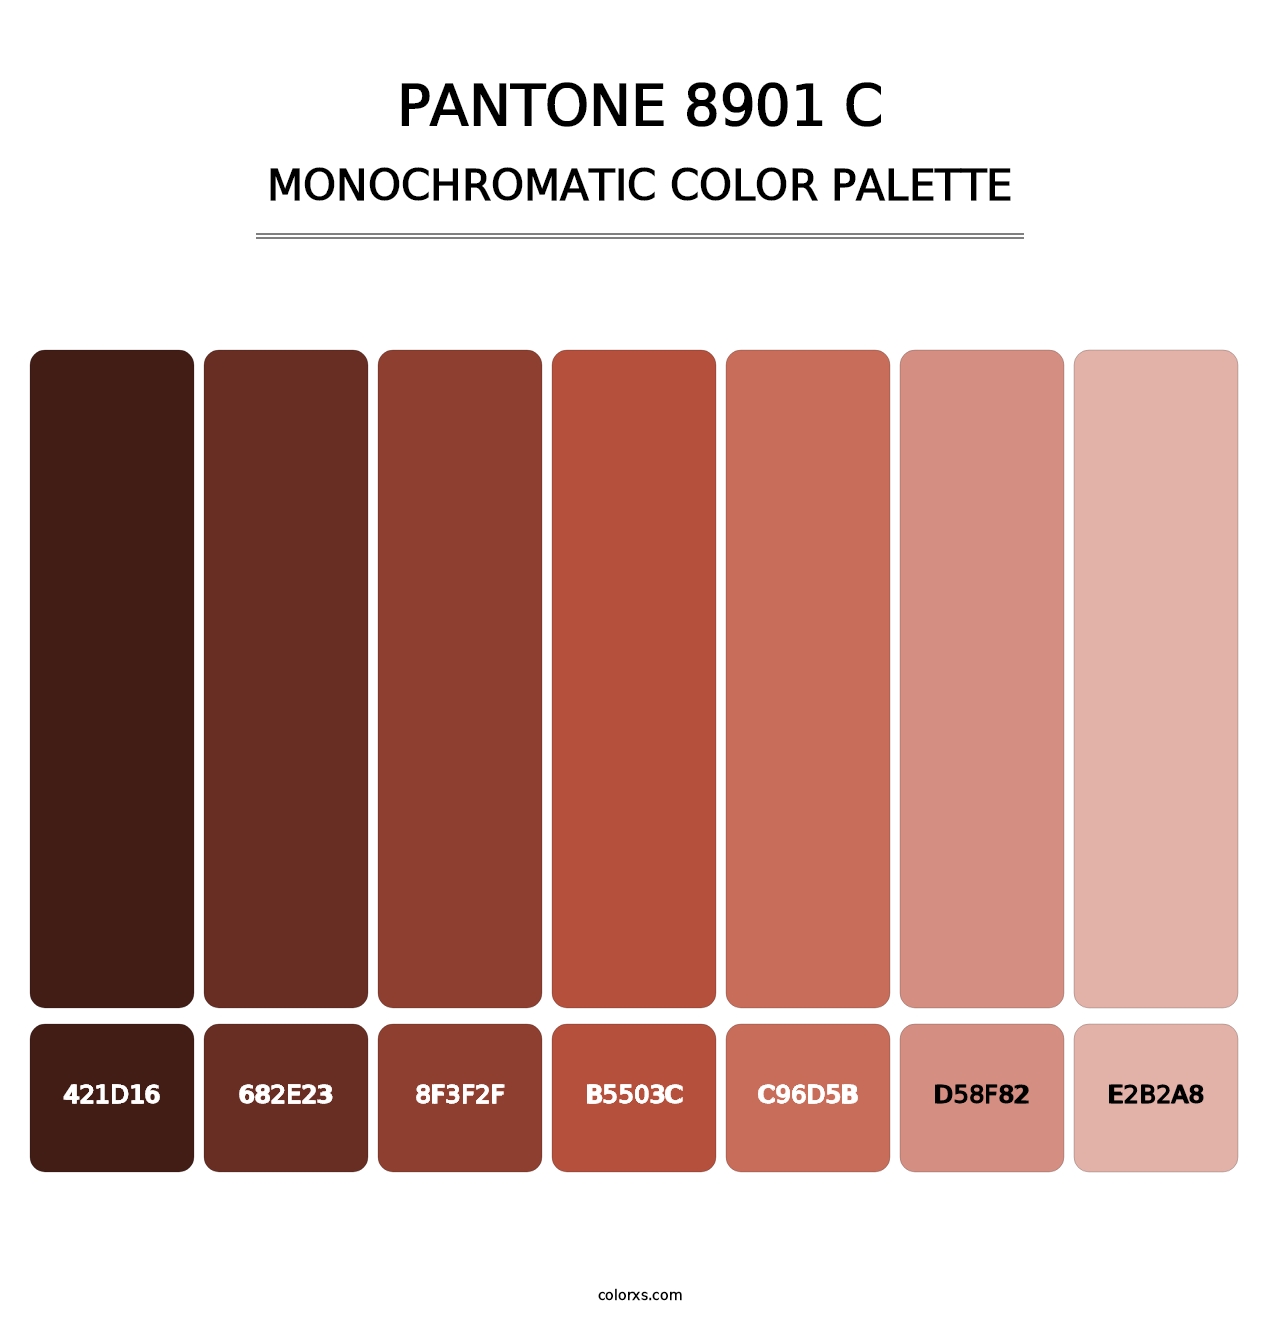 PANTONE 8901 C - Monochromatic Color Palette